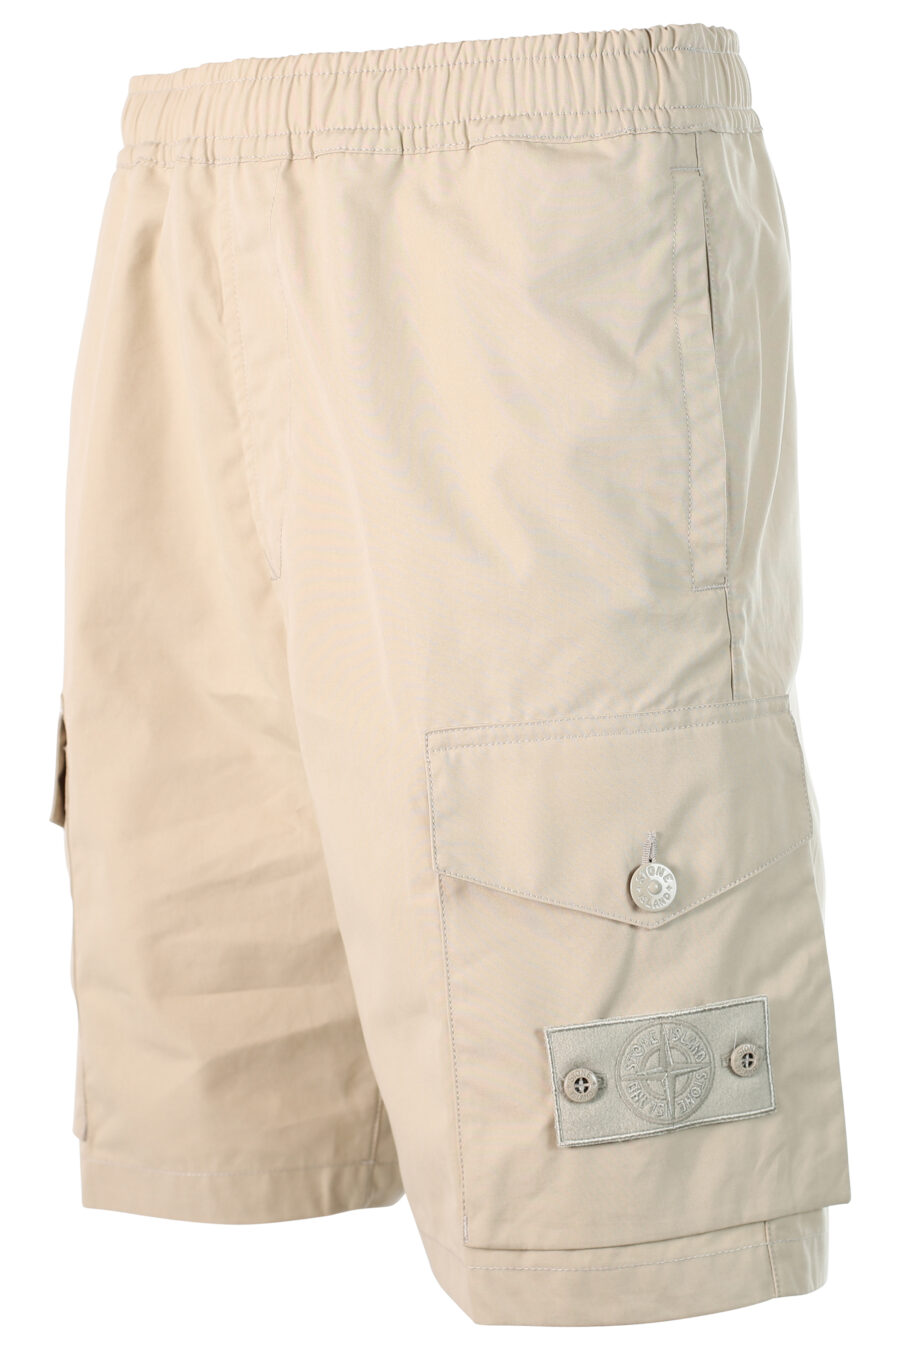 Pantalón beige corto estilo cargo con parche - 8052572538285 2